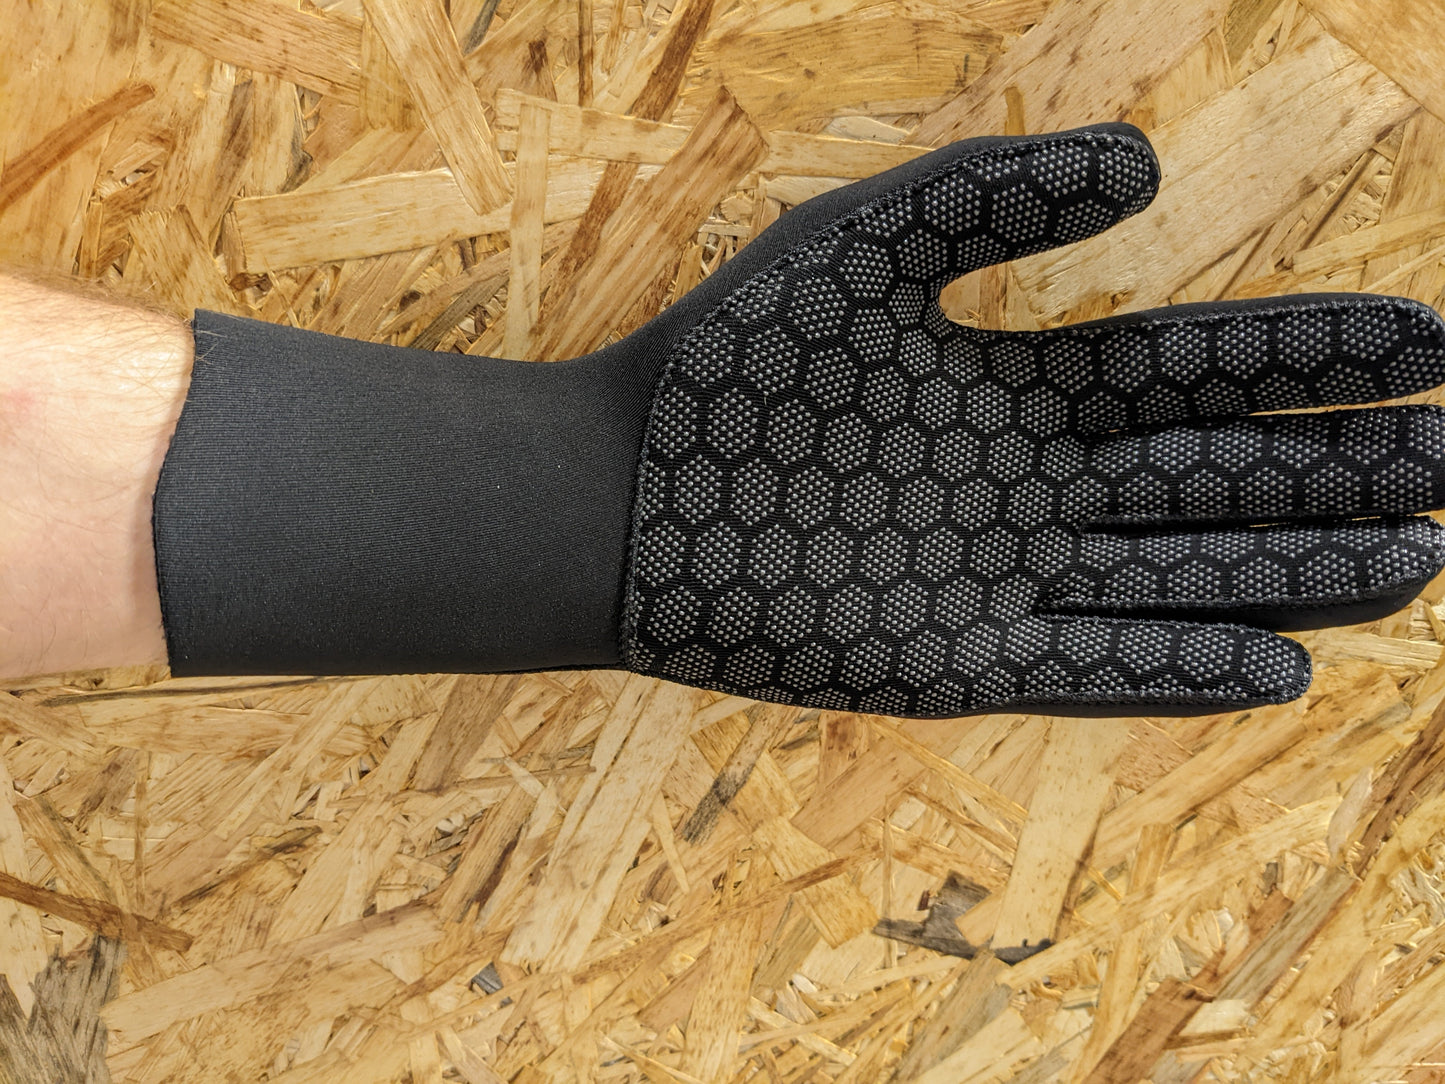 Atom 3mm Wetsuit Gloves